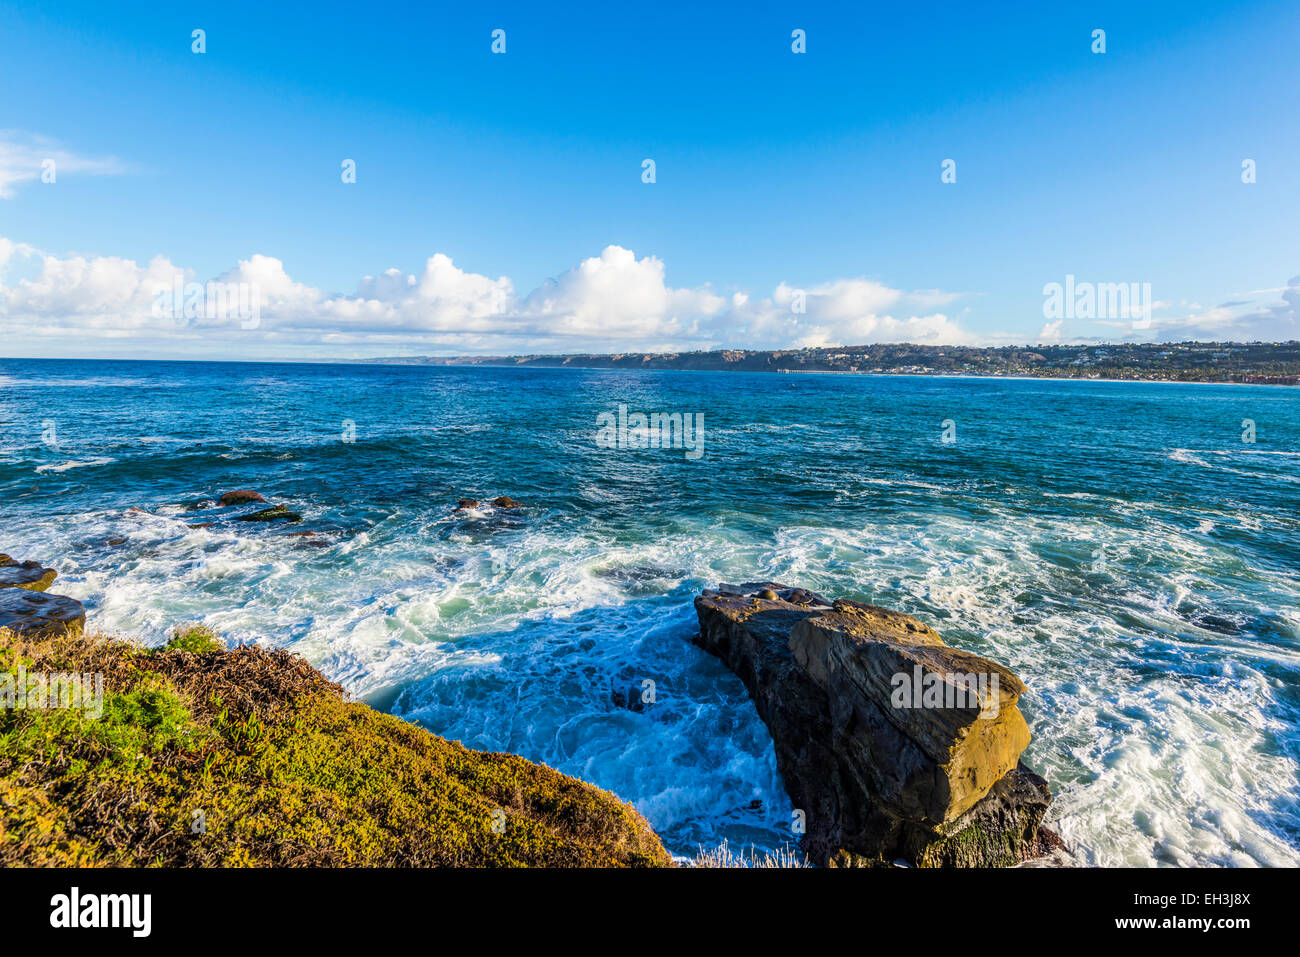 Ocean and rocks. View of the La Jolla coastline in the background. La Jolla, California, United States. Stock Photo